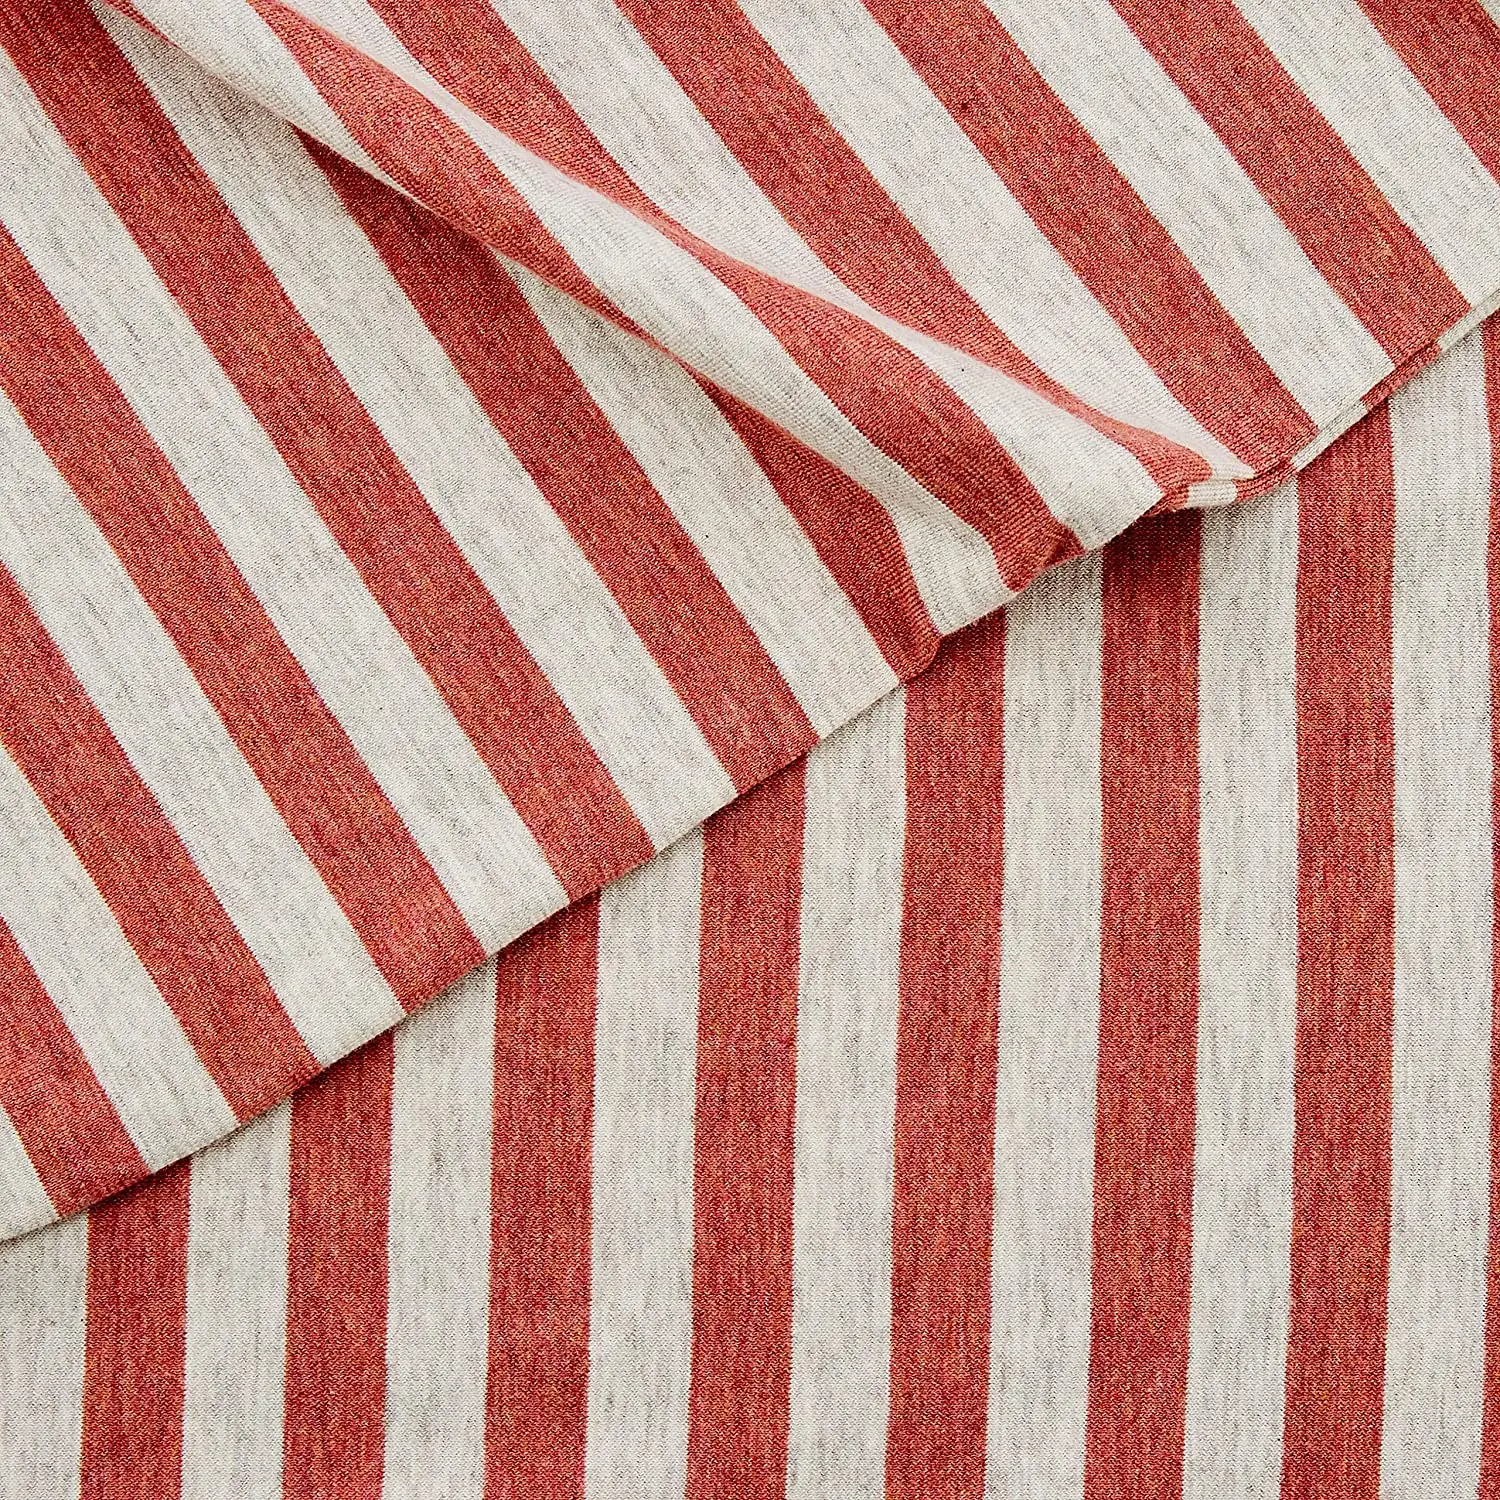 Tela stoff пряжа окрашенная уточная полоса органический эластичный хлопок Джерси ткань для постельного белья Текстиль